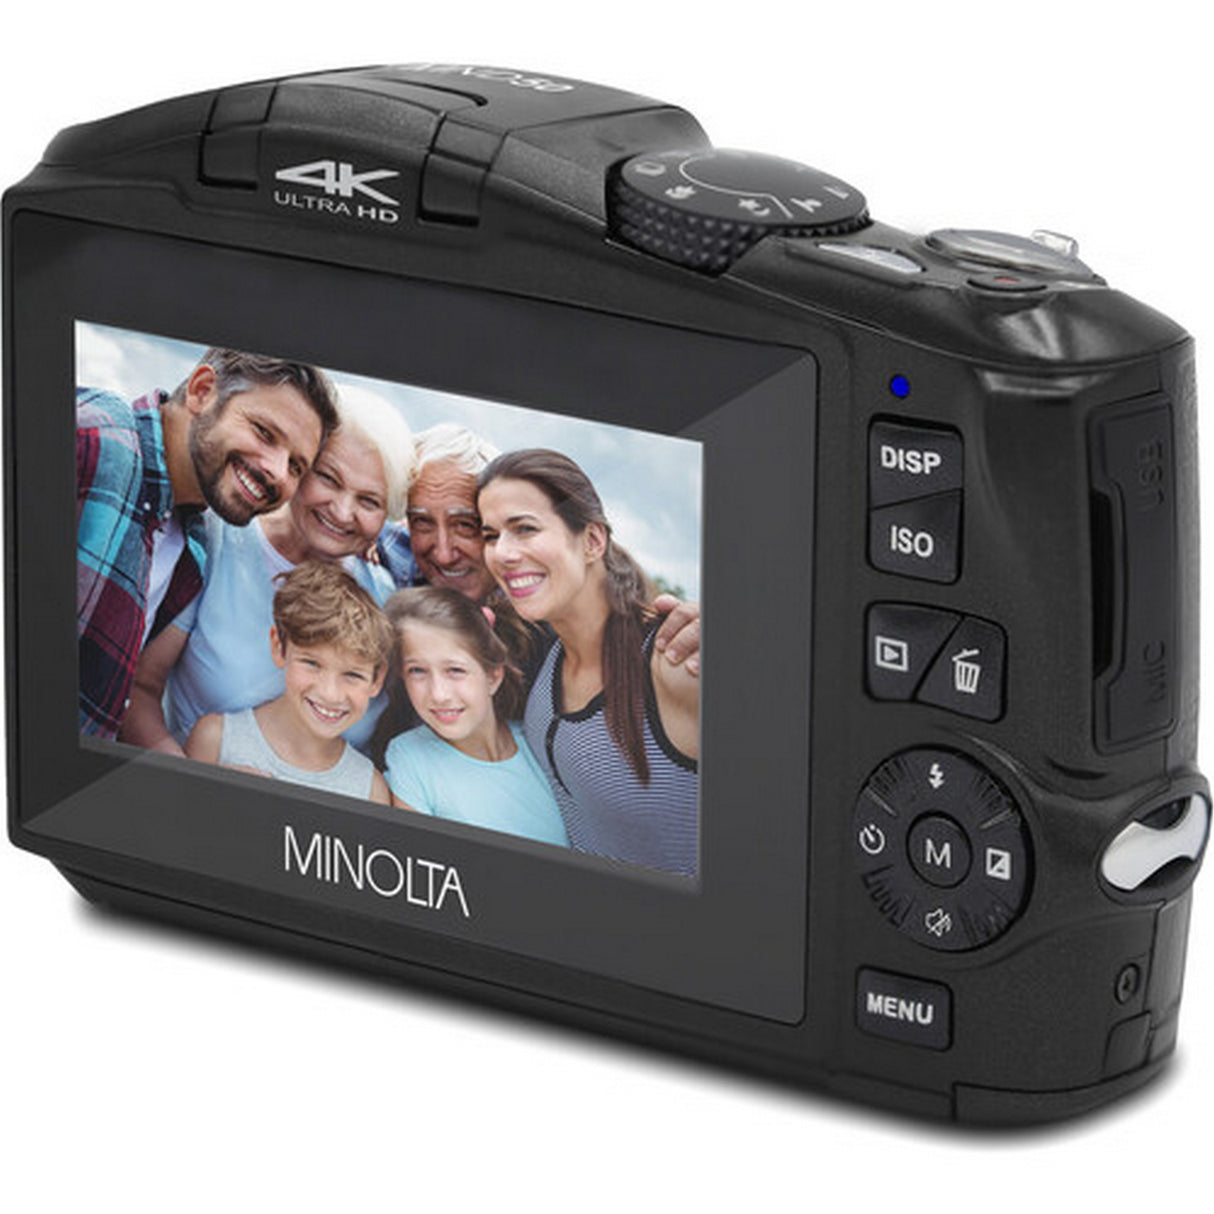 Minolta MND50 48 MP 4K Ultra HD Digital Camera, Black